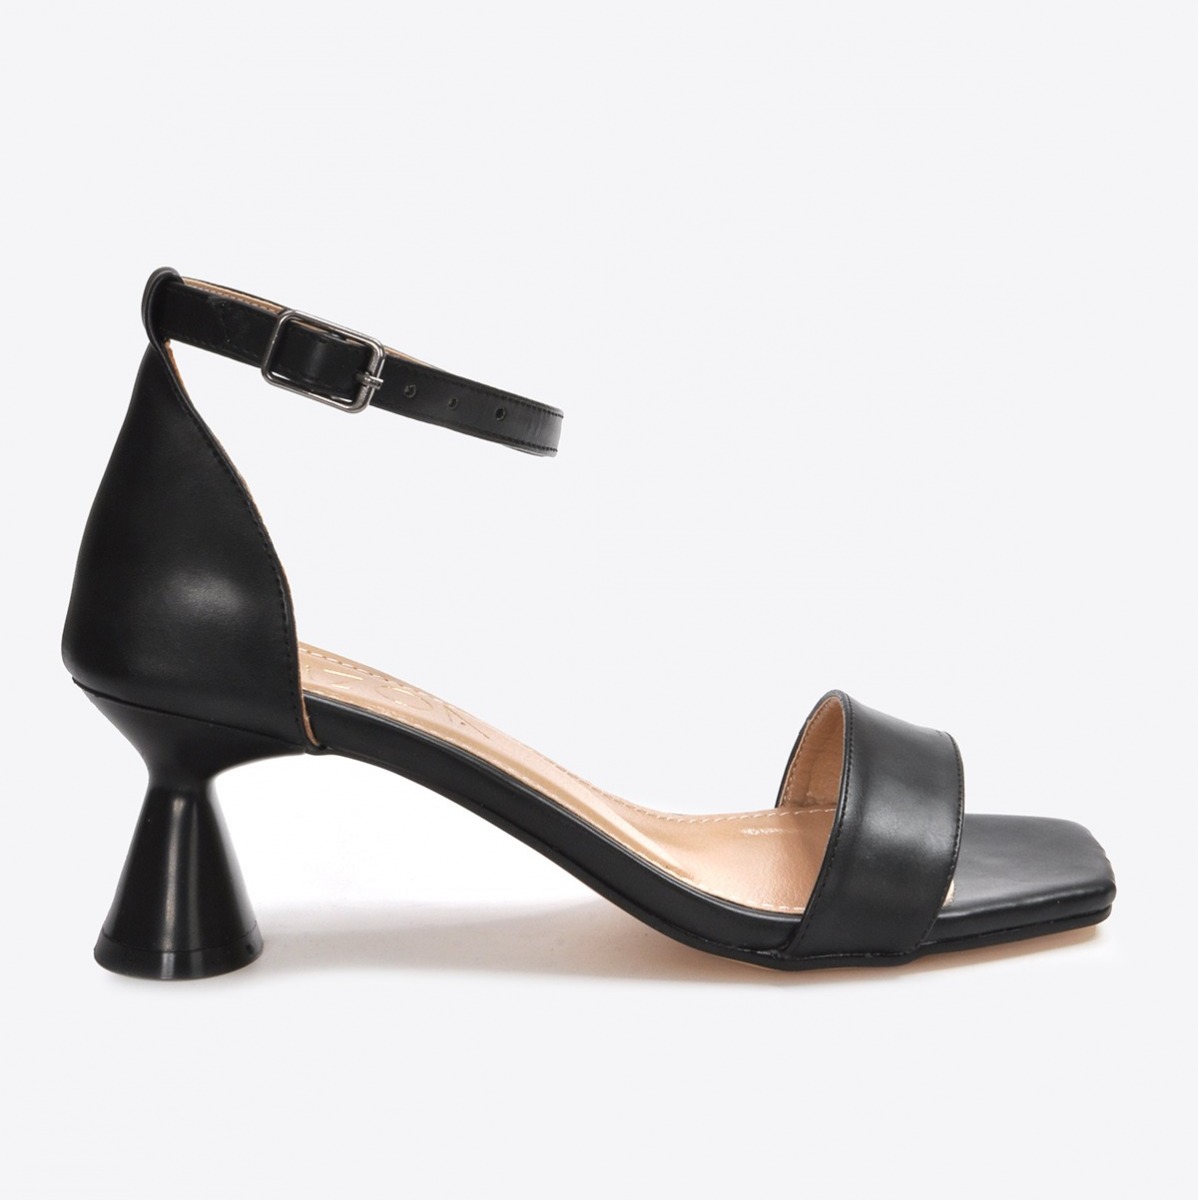 Flo Kadın  Siyah Klasik Topuklu Ayakkabı VZN21-032Y. 2